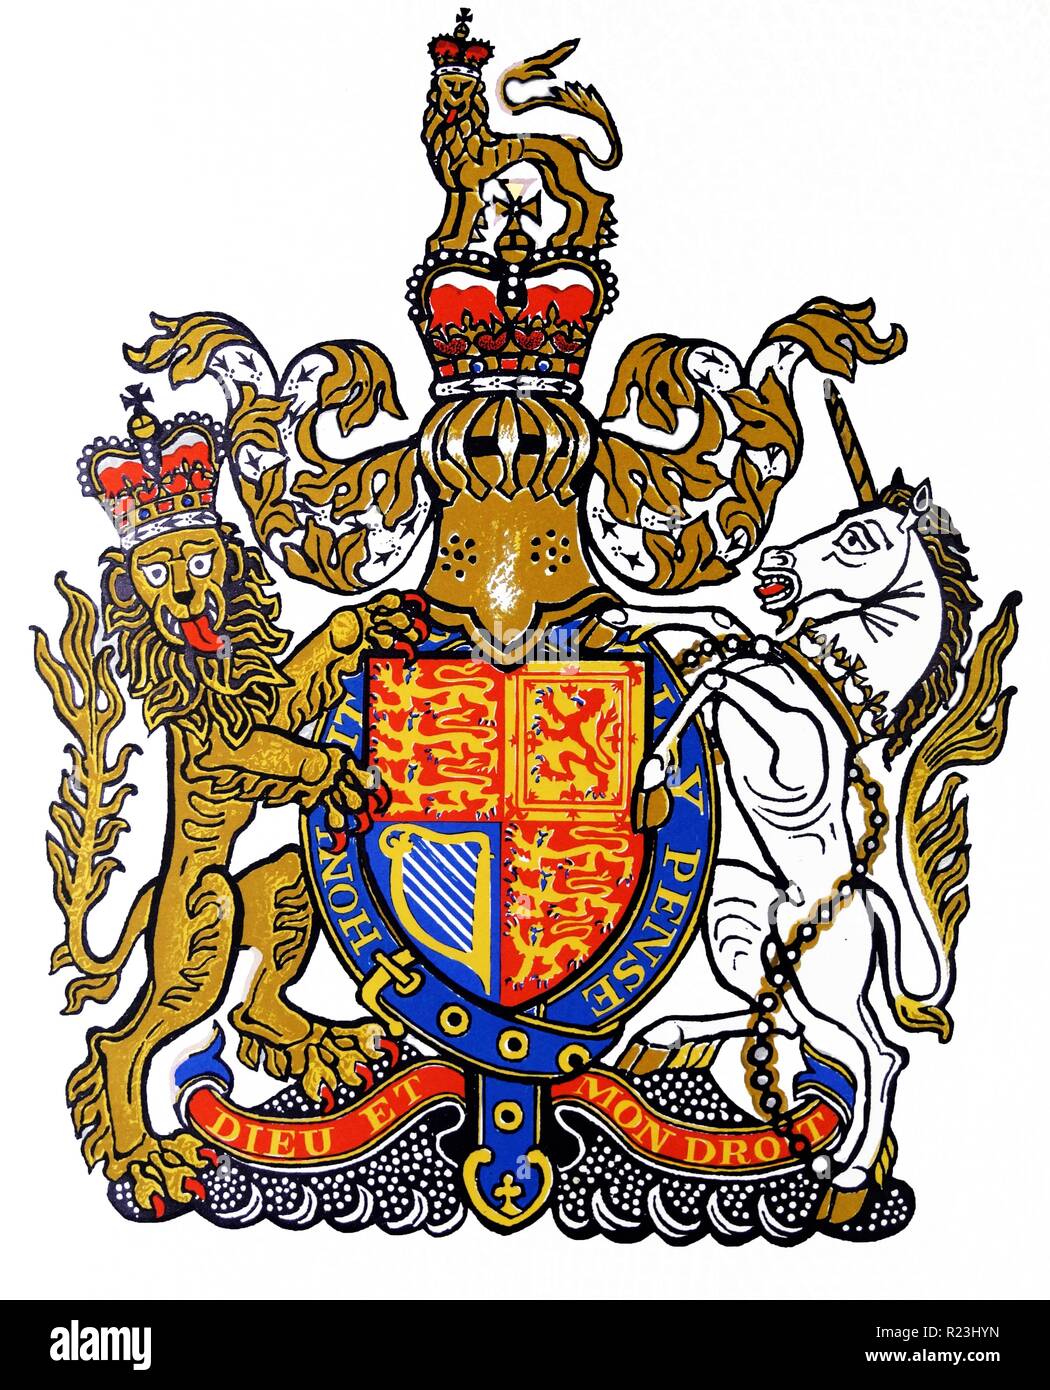 Lo stemma del monarca britannico recanti il motto dei monarchi Inglesi, Dieu et mon droit (Dio e il mio diritto). Disegnato da Edward Bawden CBE RA (1903 - 1989) era un inglese un artista grafico. Foto Stock